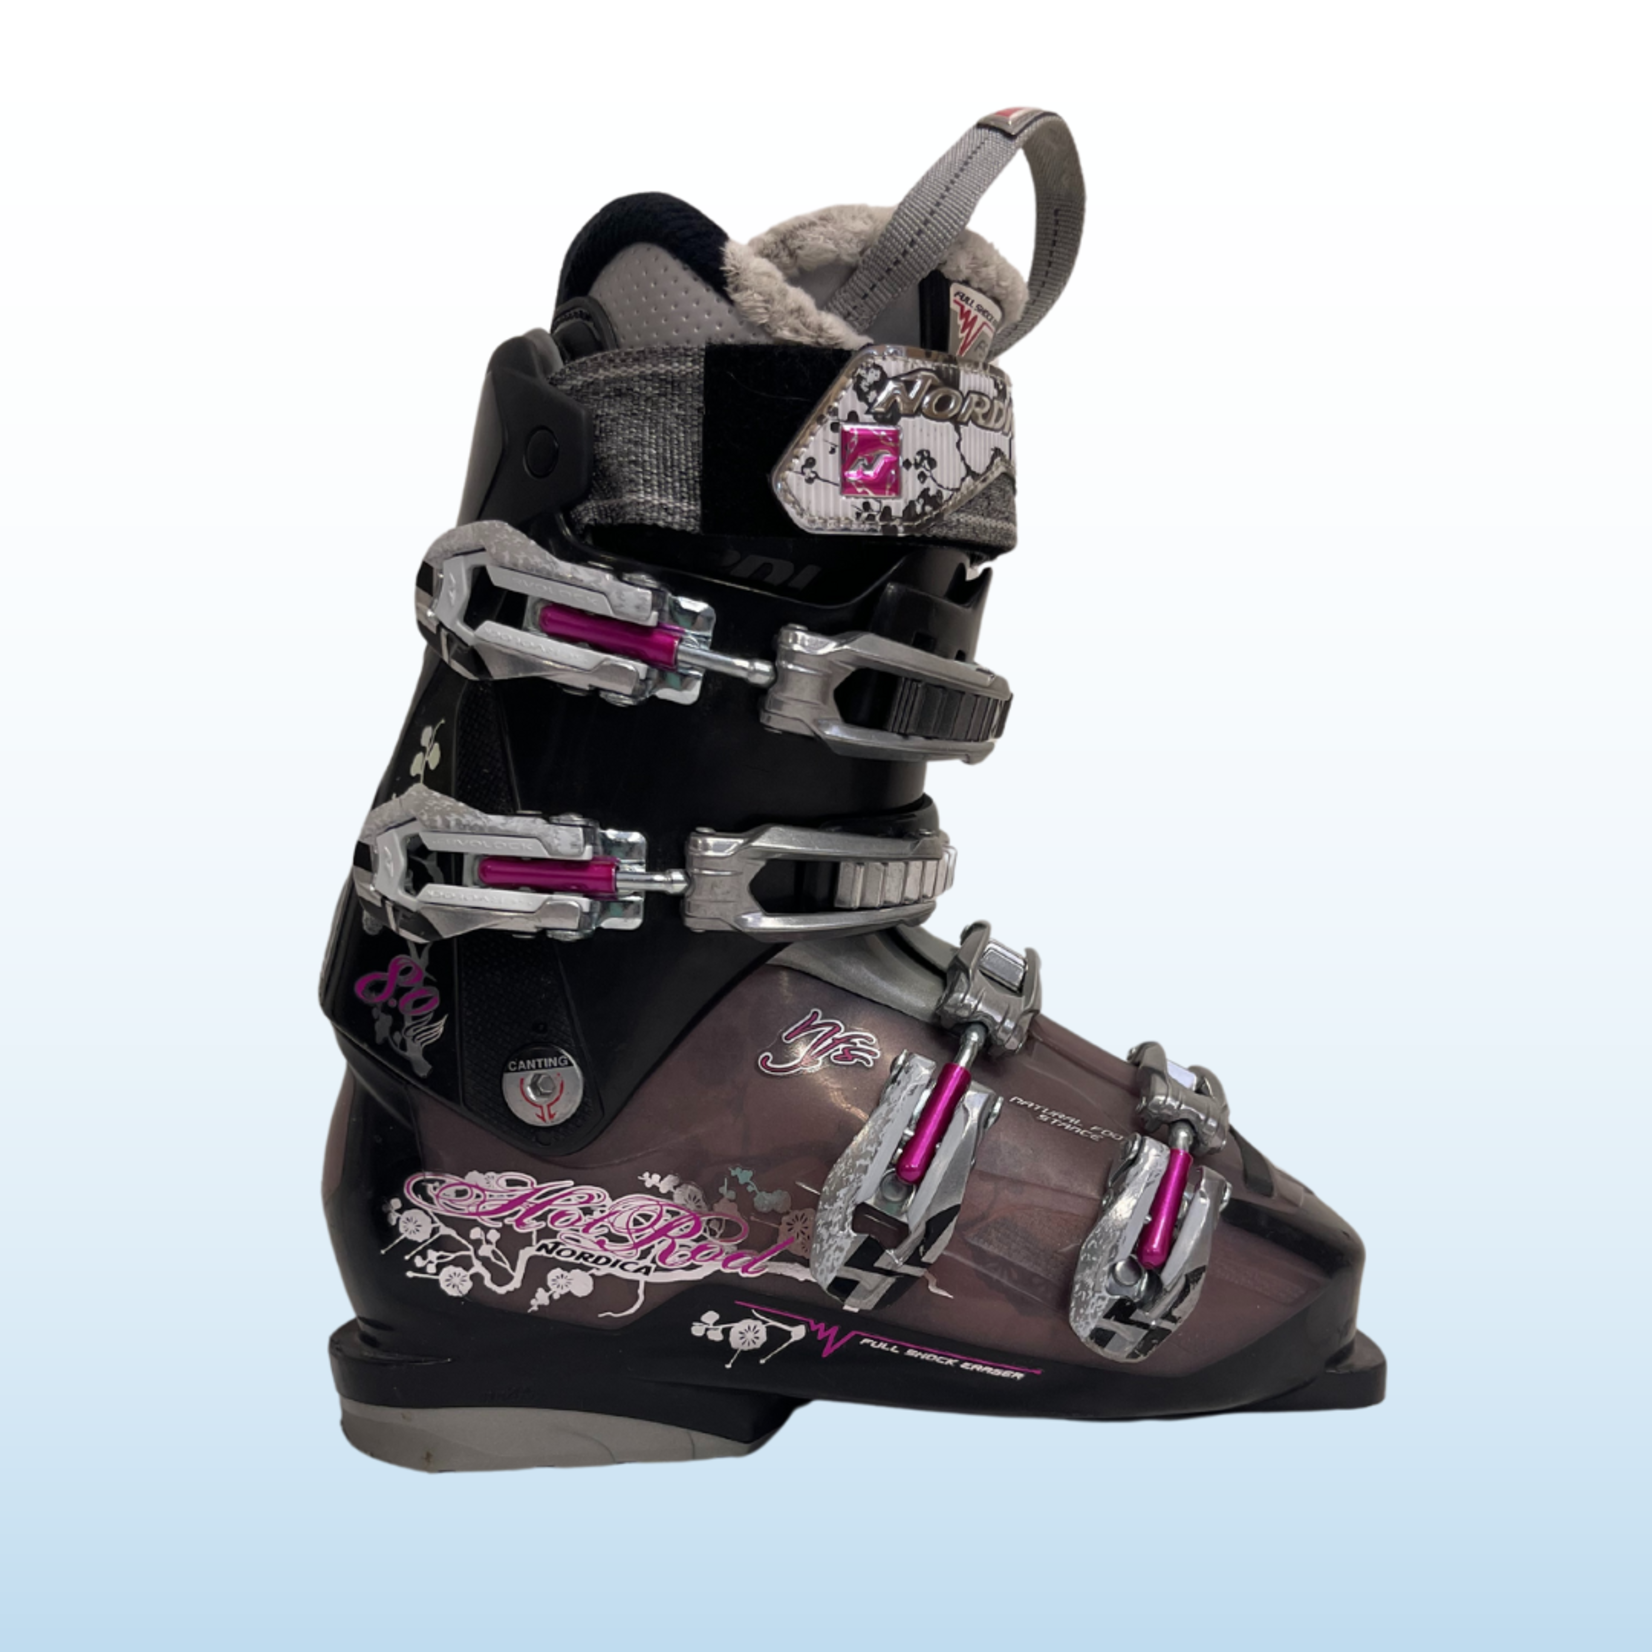 Nordica Nordica Hot Rod 8.0 Ski Boots, Size 24.5